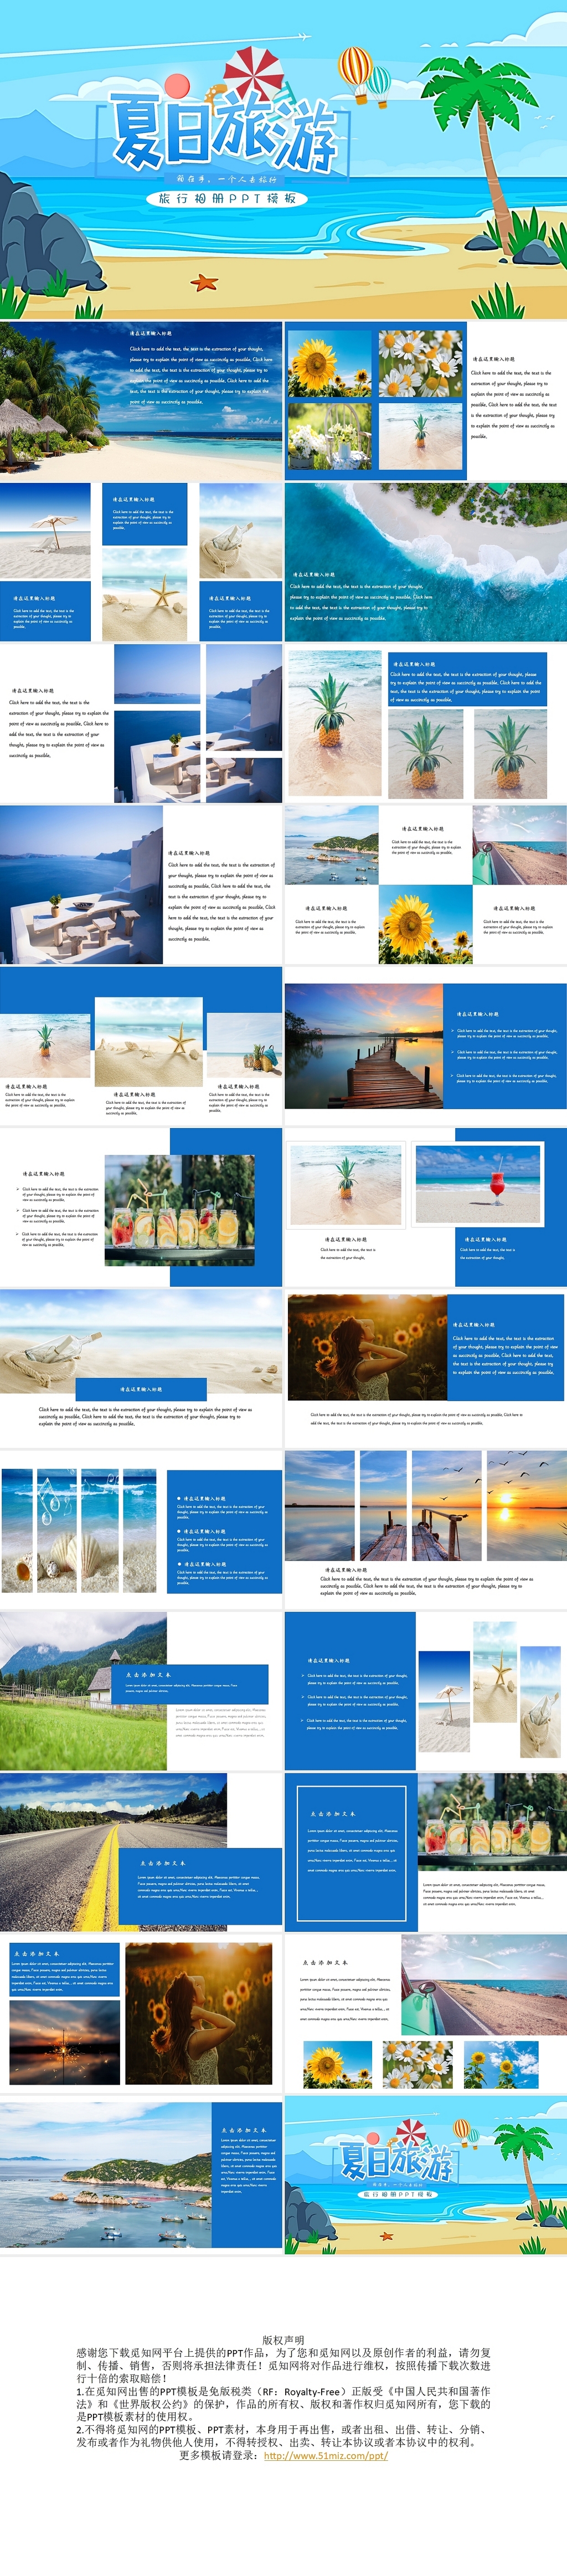 蓝色度假风夏日旅游旅行相册PPT模板夏天海边旅游